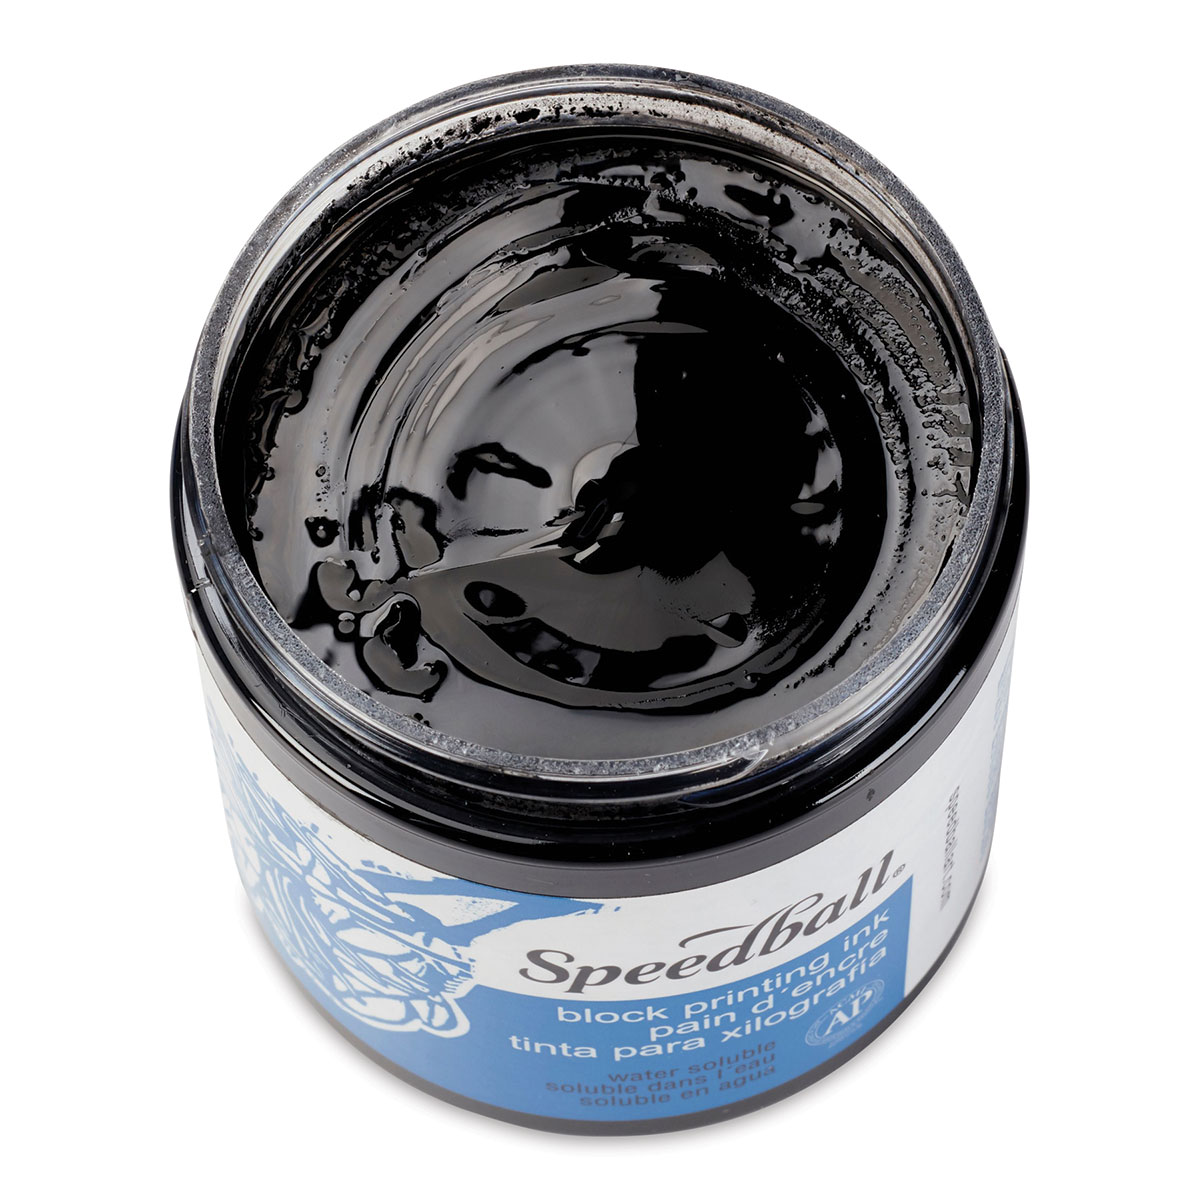 Speedball Water-Soluble Block Printing Ink - Black, 16 oz